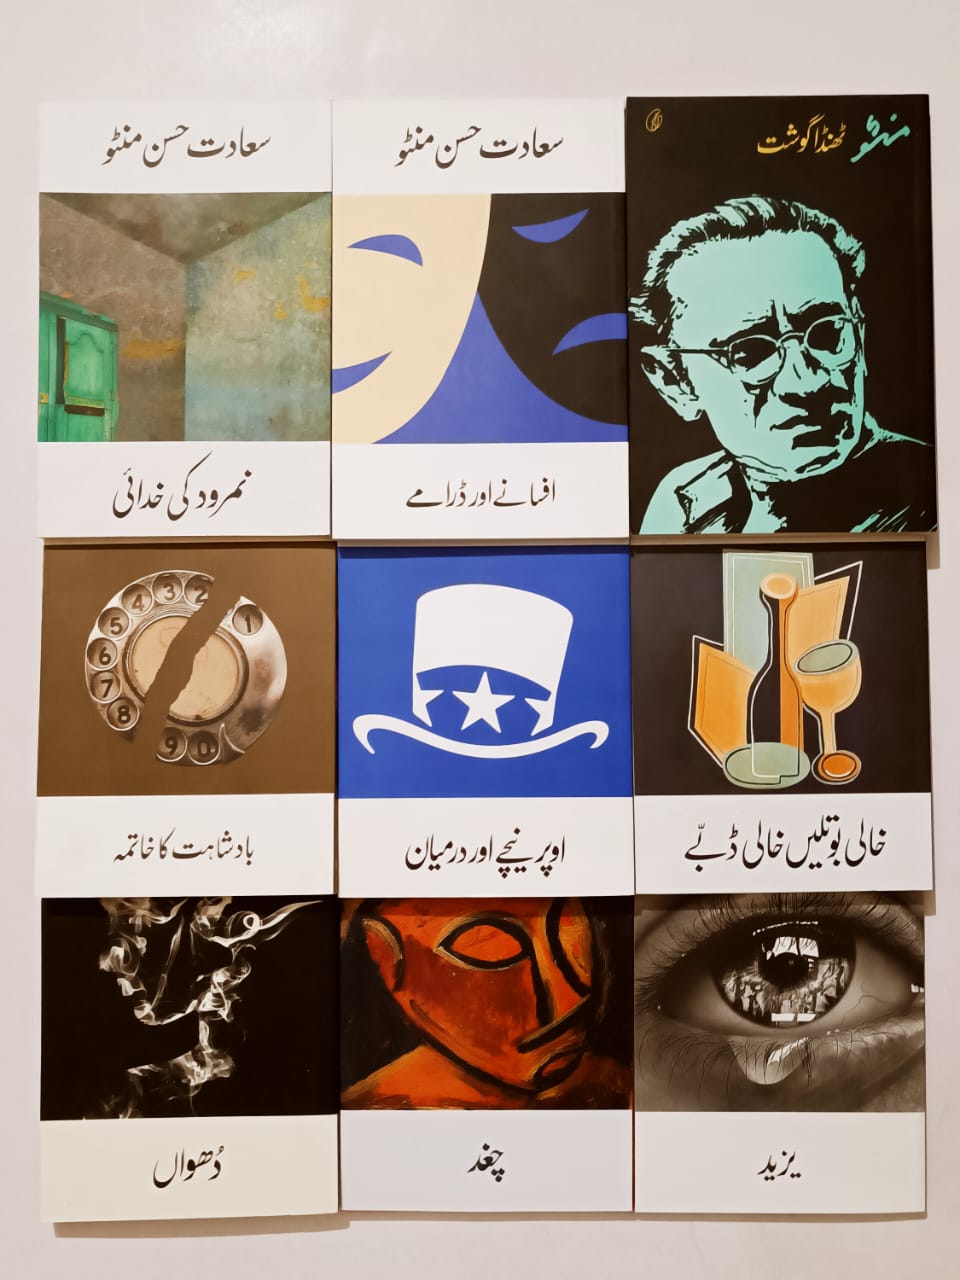 Best Saadat Hasan Manto Quotes in Urdu منٹو کے اقوال زریں | Urdu Poetry